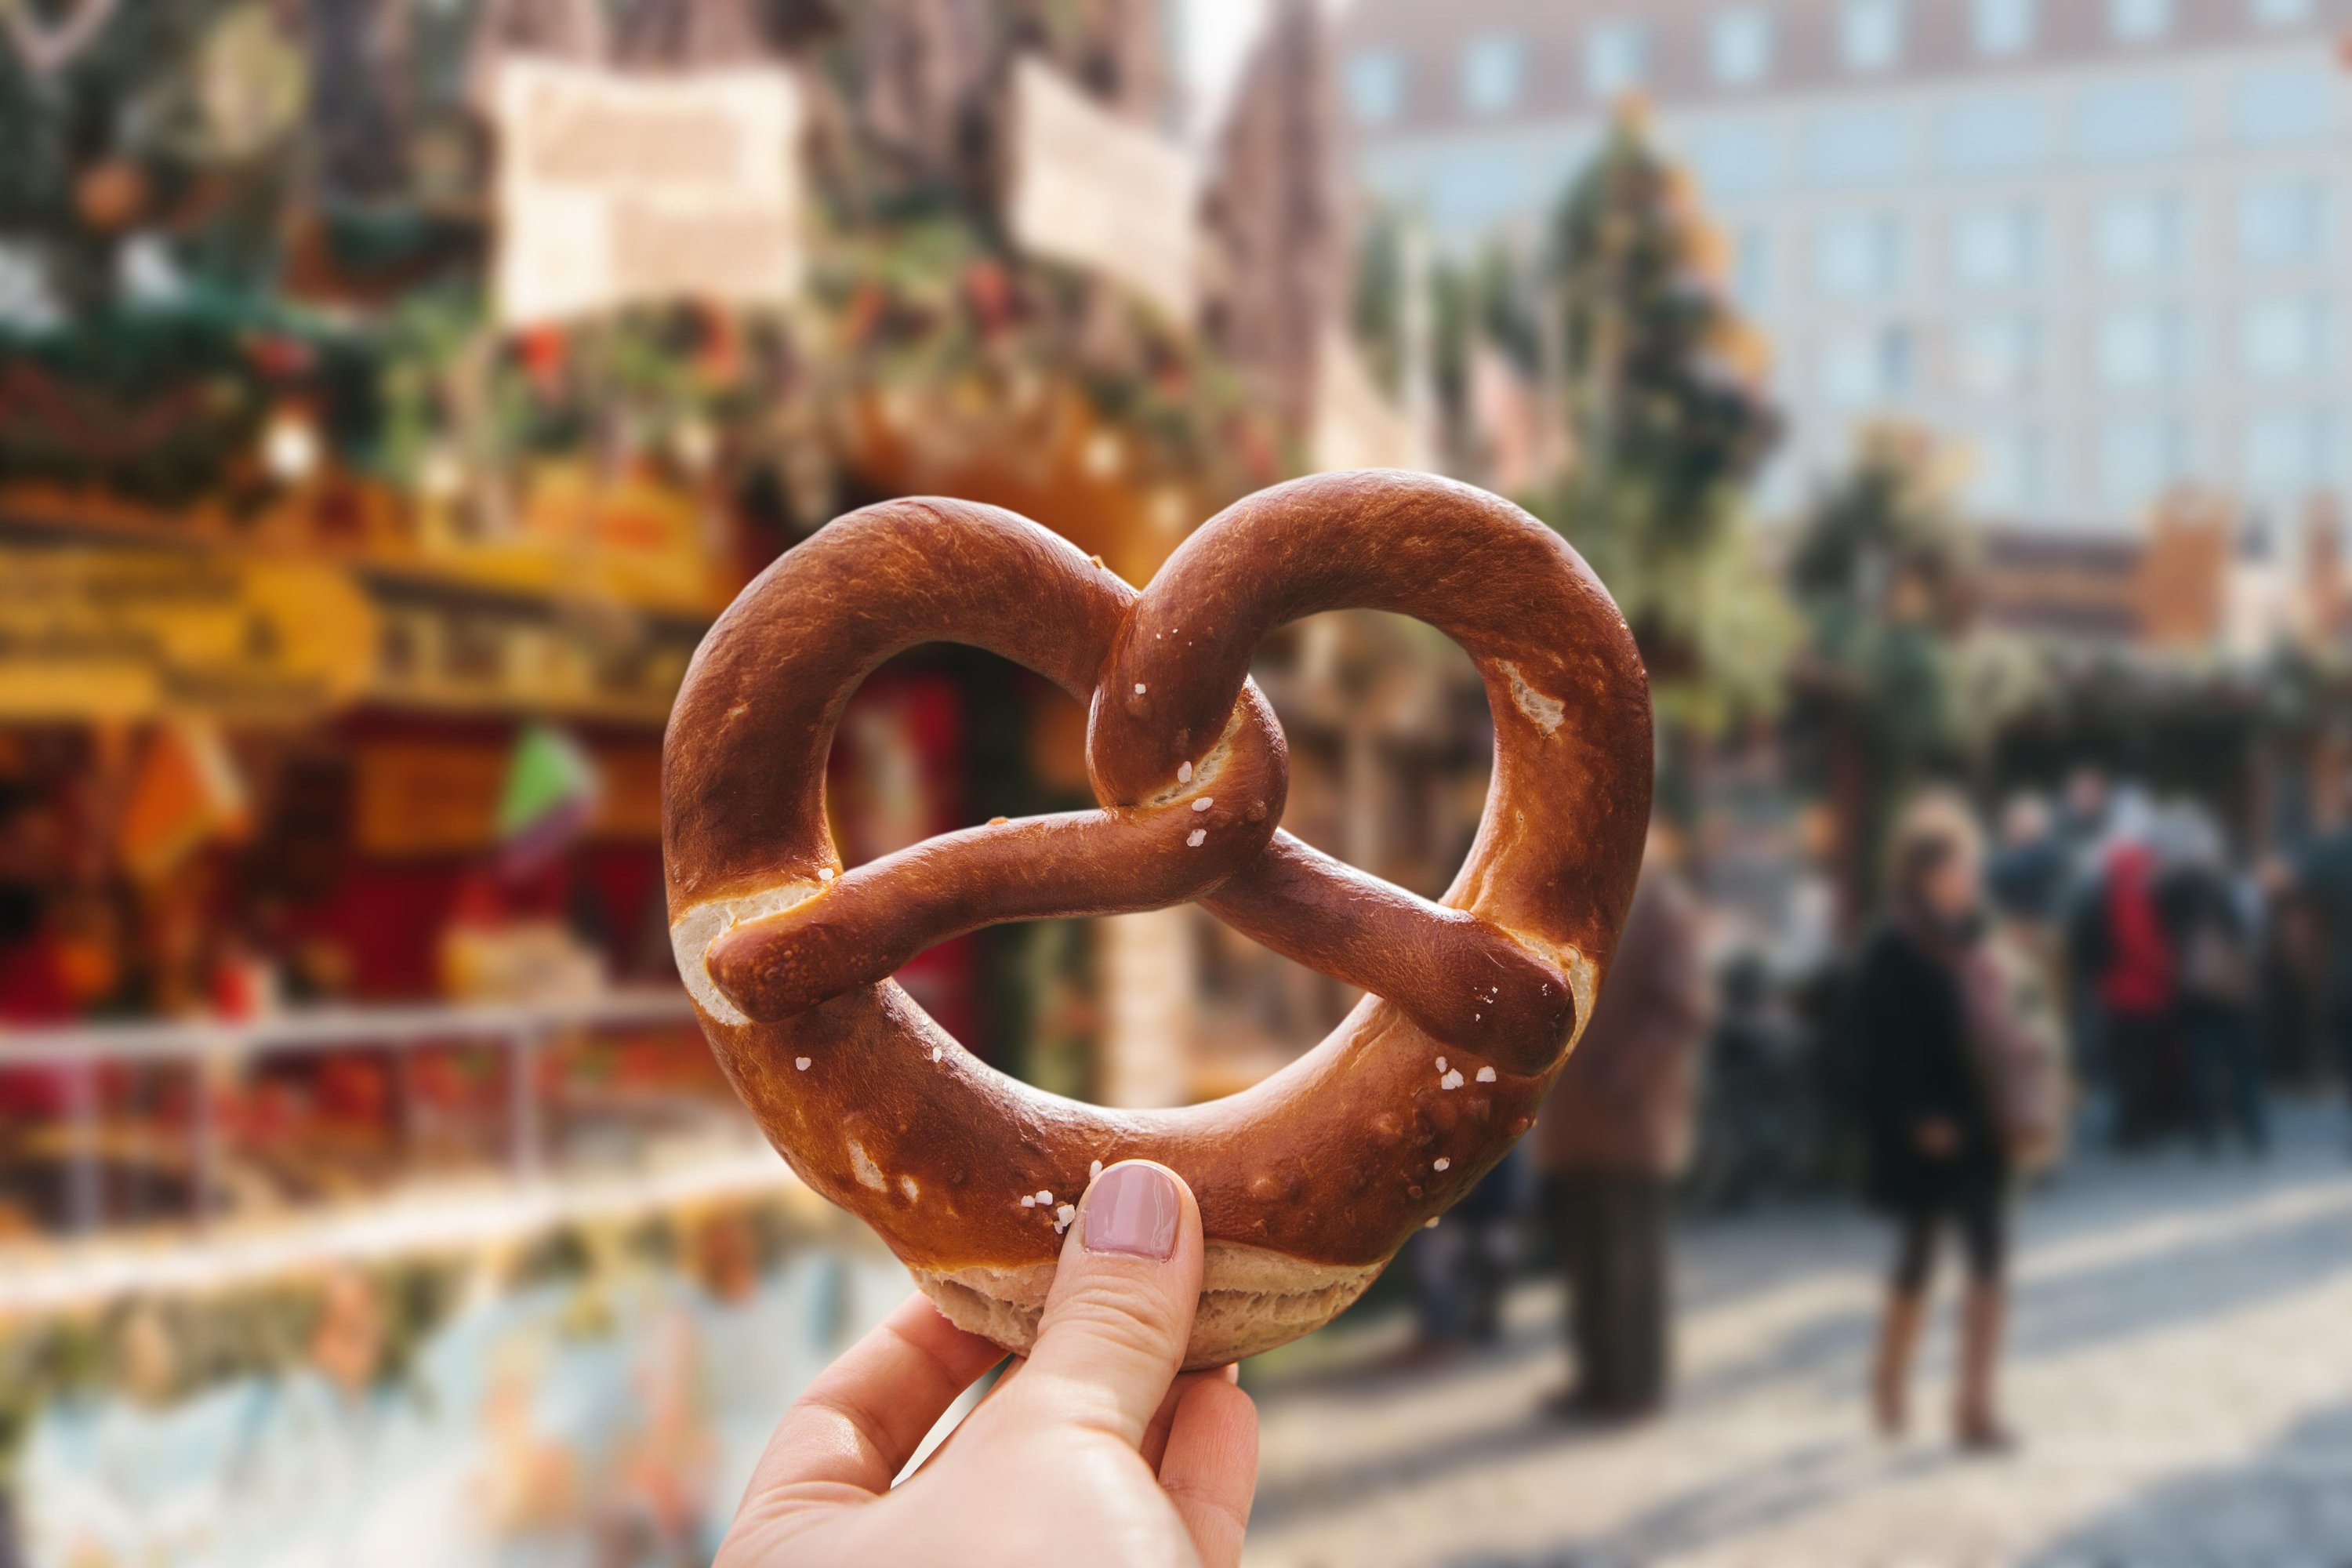 tour du lịch free & easy Đức - Bánh pretzel đặc trưng của nước Đức.